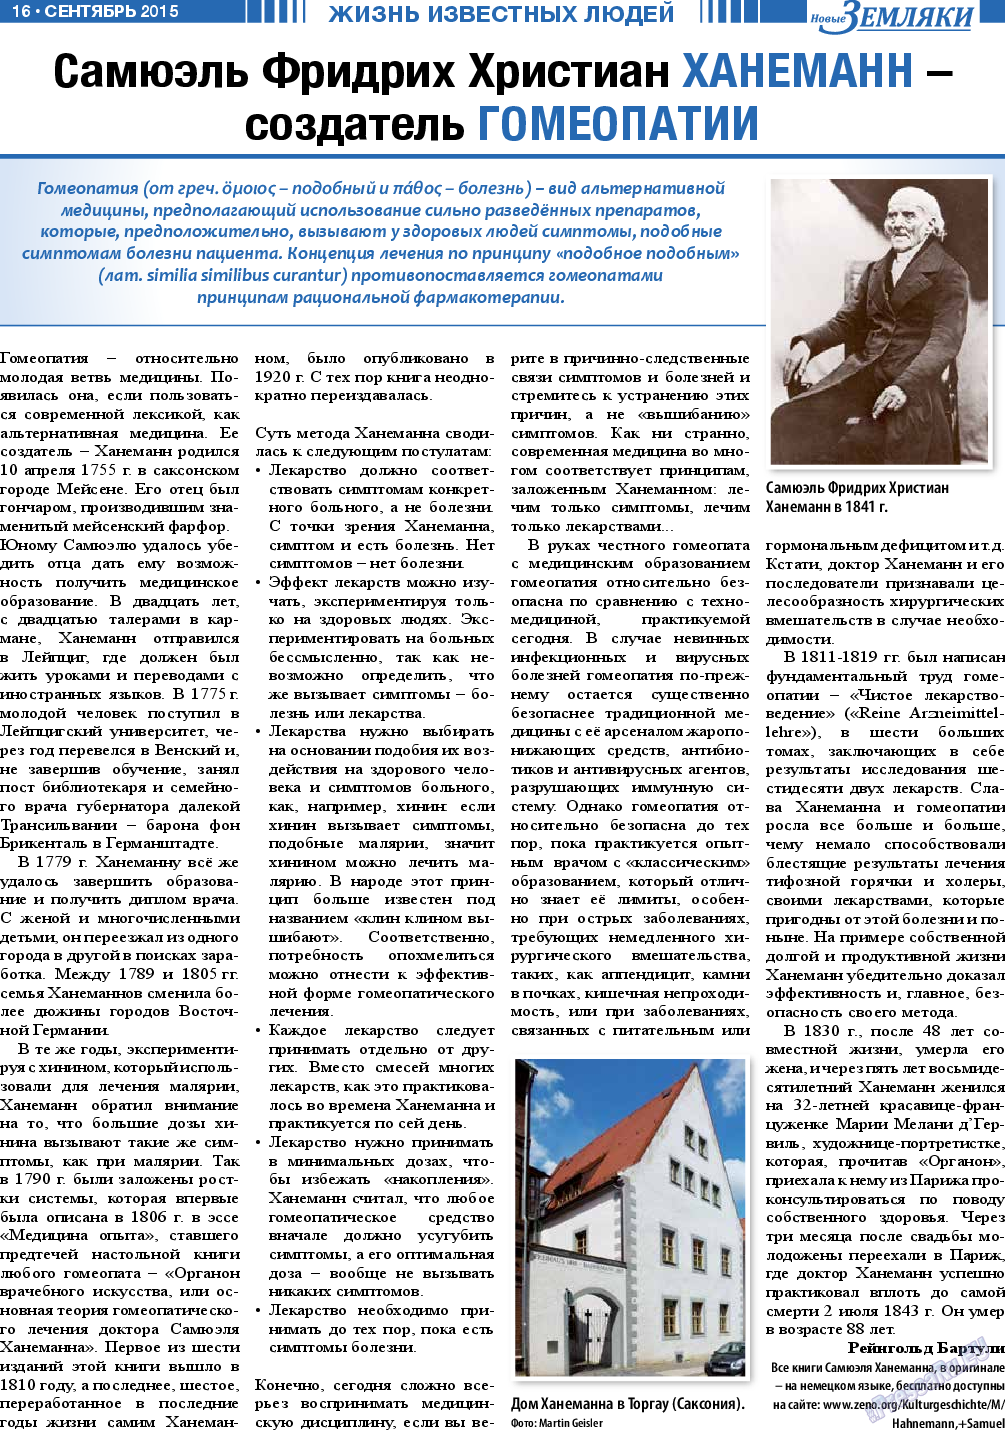 Новые Земляки (газета). 2015 год, номер 9, стр. 16